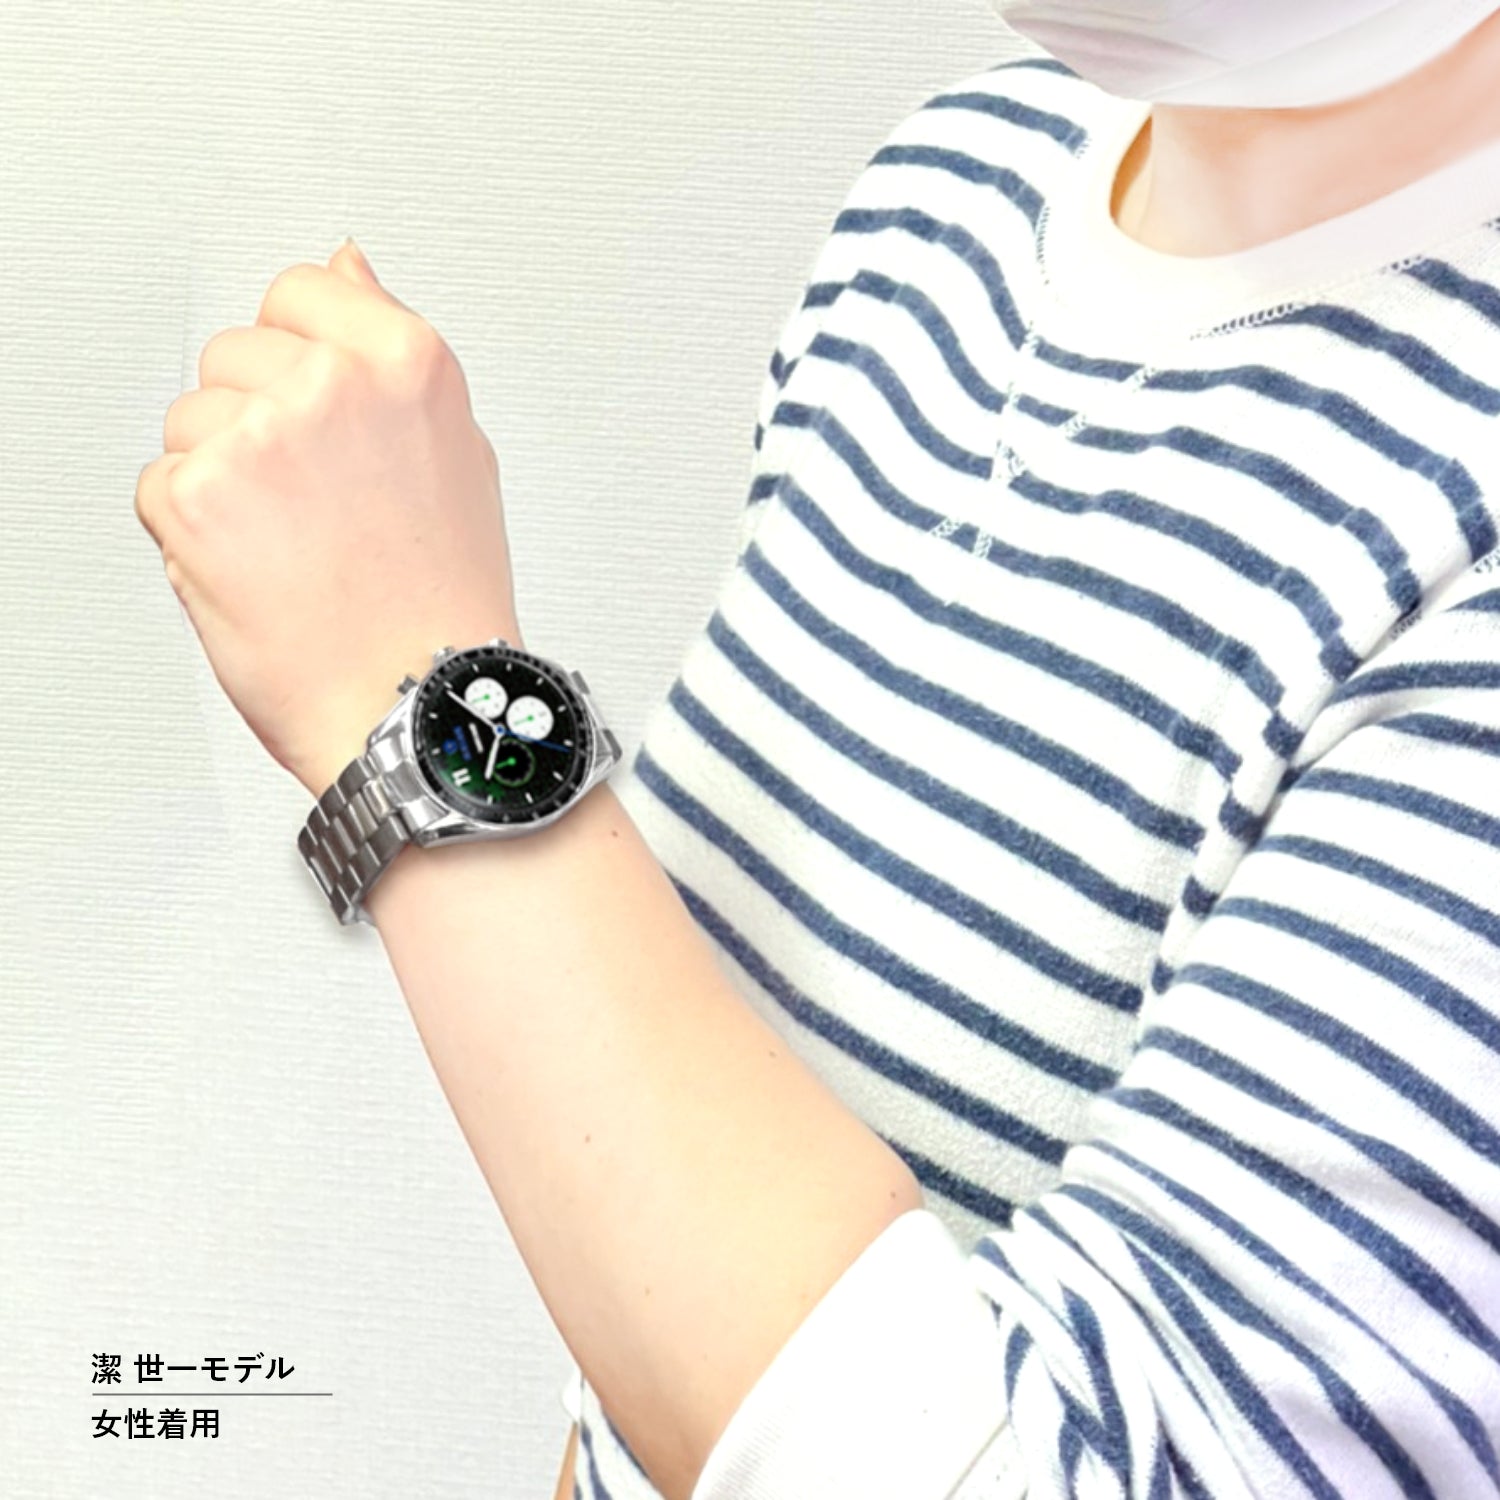 テレビアニメ「ブルーロック」オフィシャルクロノグラフ腕時計 凪 誠士郎 - 公式通販サイト「アニメコレクション/Anime Collection」